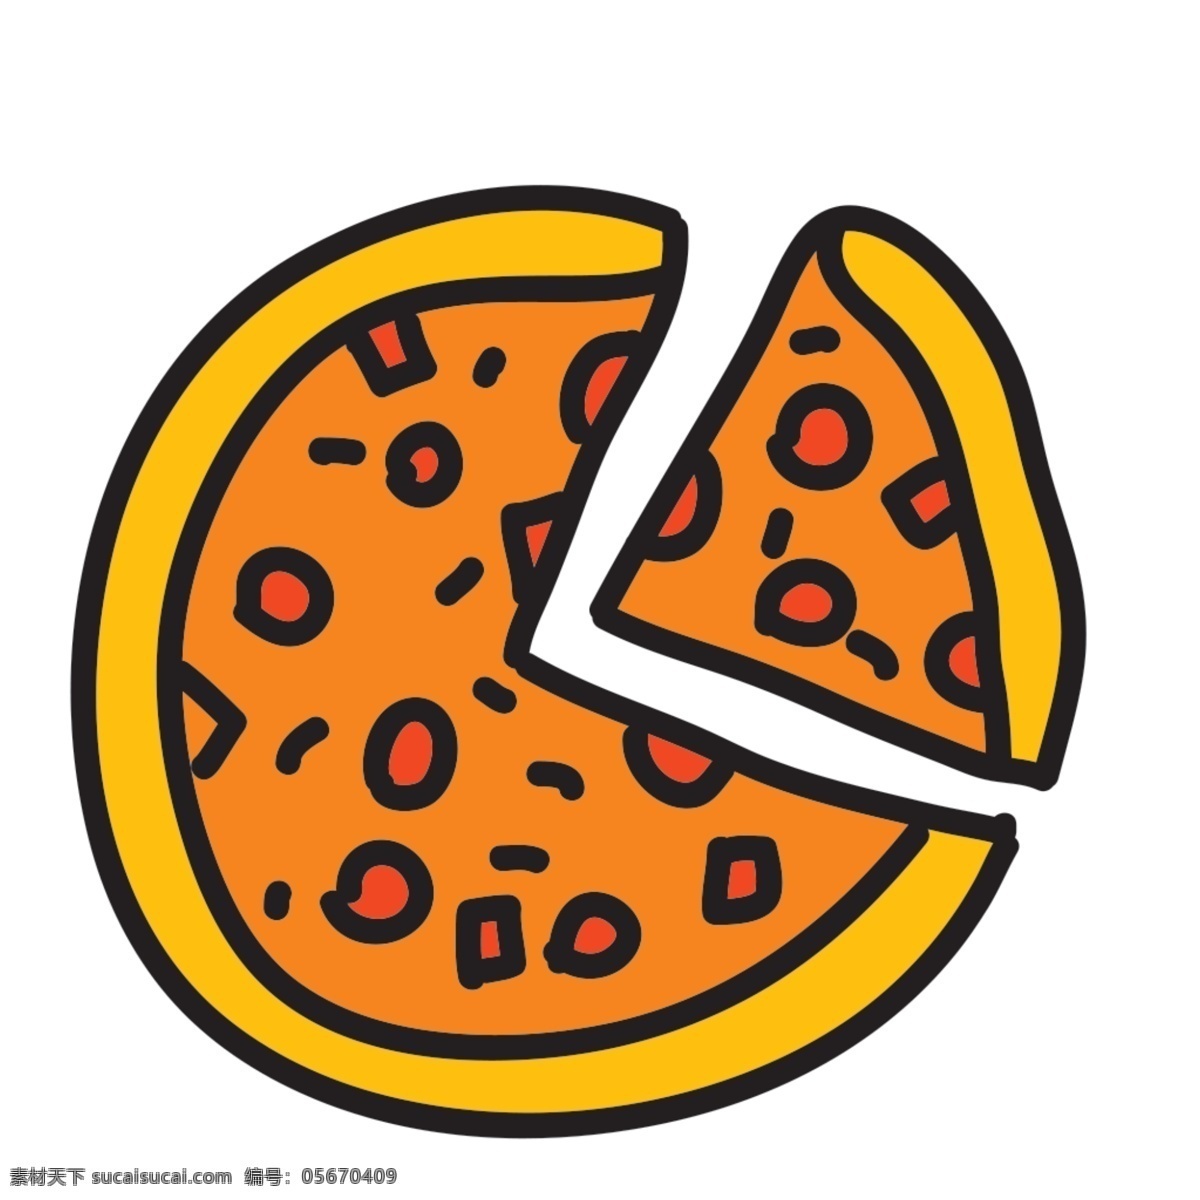 网页 ui 美食 披萨 icon 图标 图标设计 icon设计 icon图标 网页图标 披萨图标 披萨icon 披萨图标设计 美食图标